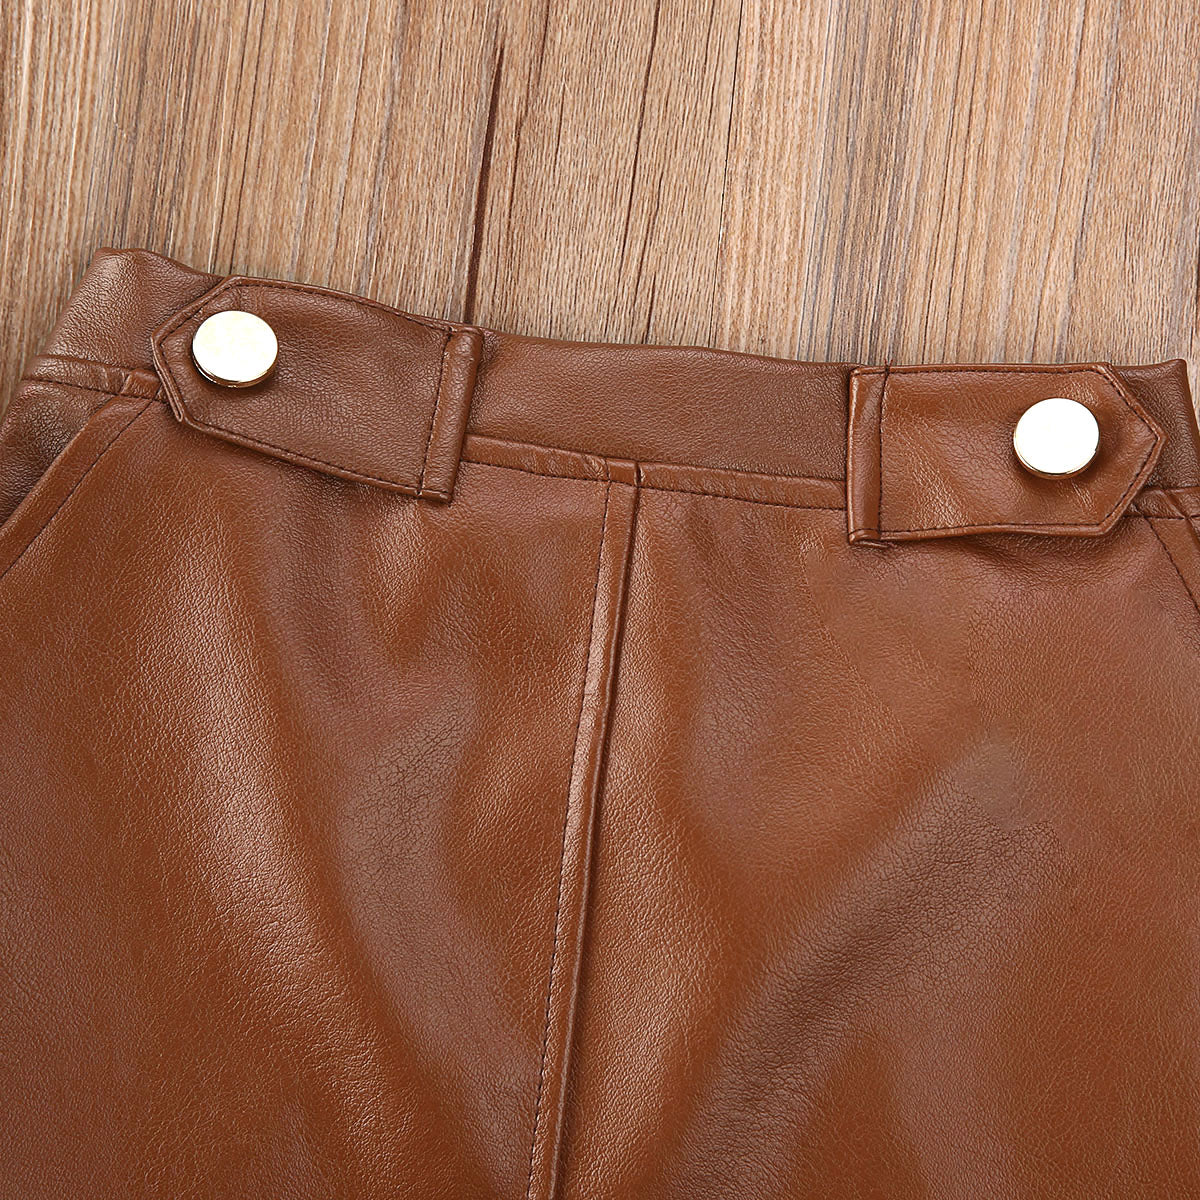 Ribbed Top & Tan Skirt set - nixonscloset